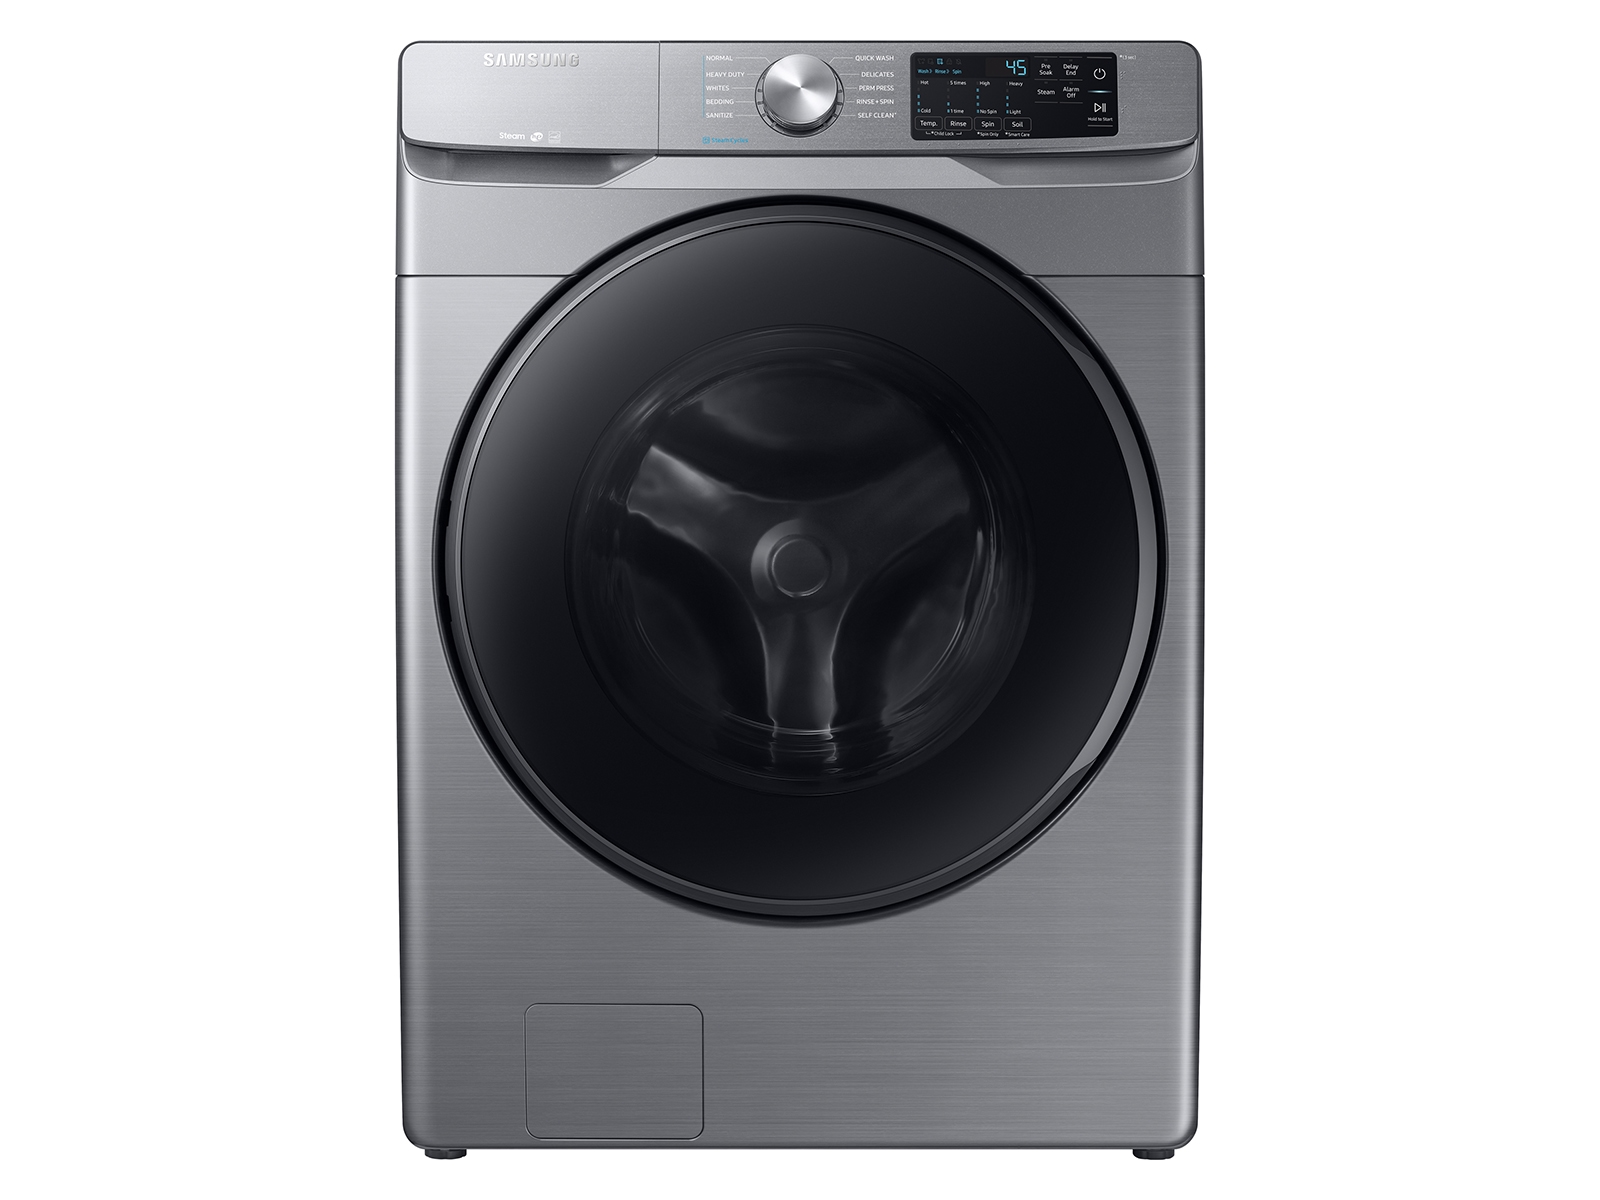 Photos - Washing Machine Samsung 4.5 cu. ft. Front Load Washer with Steam in Platinum(WF45R6100AP/U 